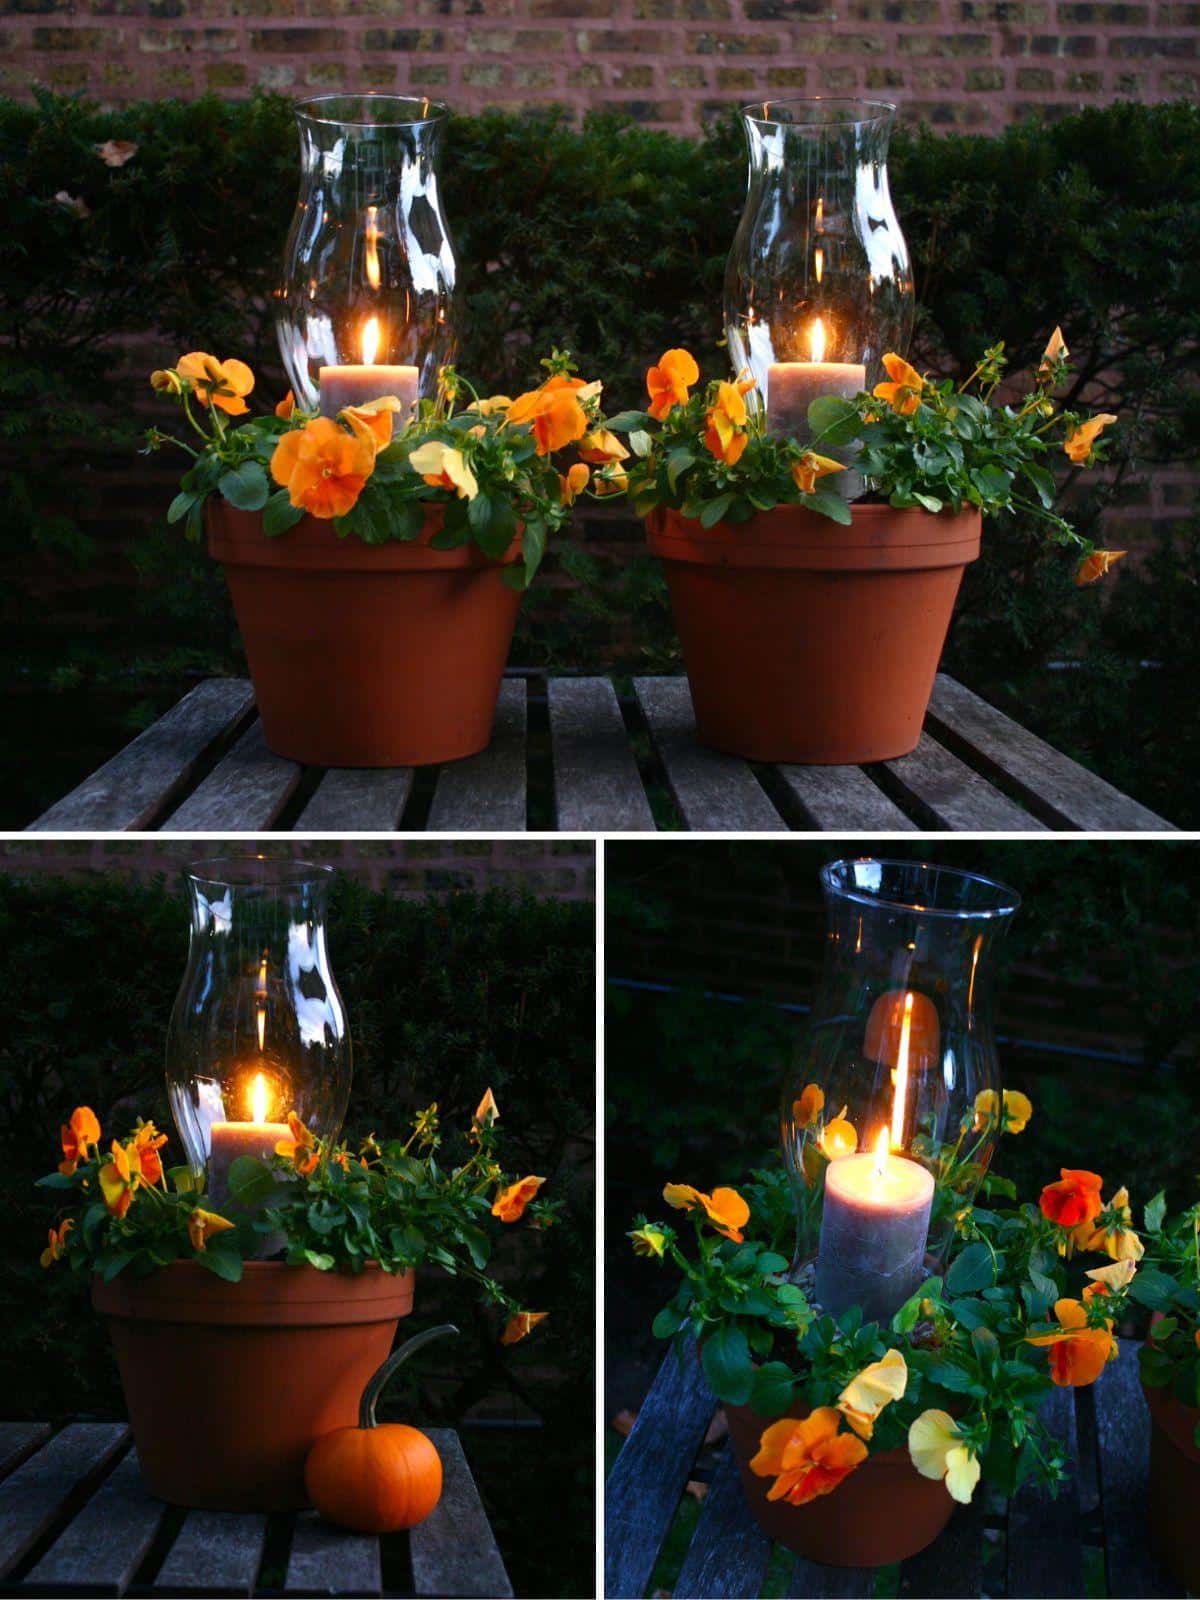 Plant Pot-Meets-Lantern collage.